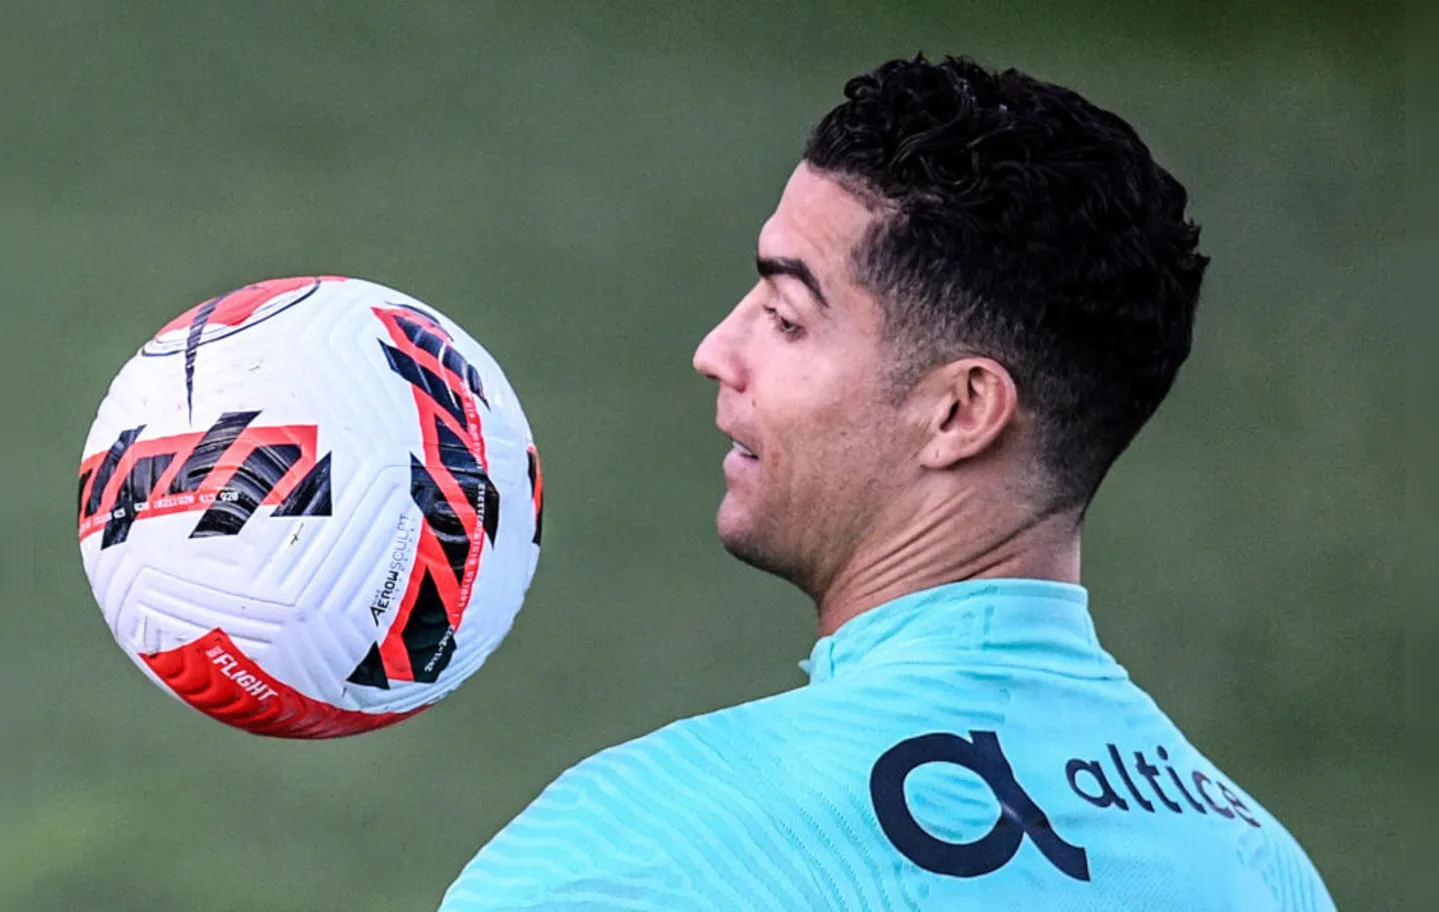 Se conseguir a classificação, Cristiano Ronaldo entraria no restrito clube de jogadores que disputaram cinco Copas do Mundo